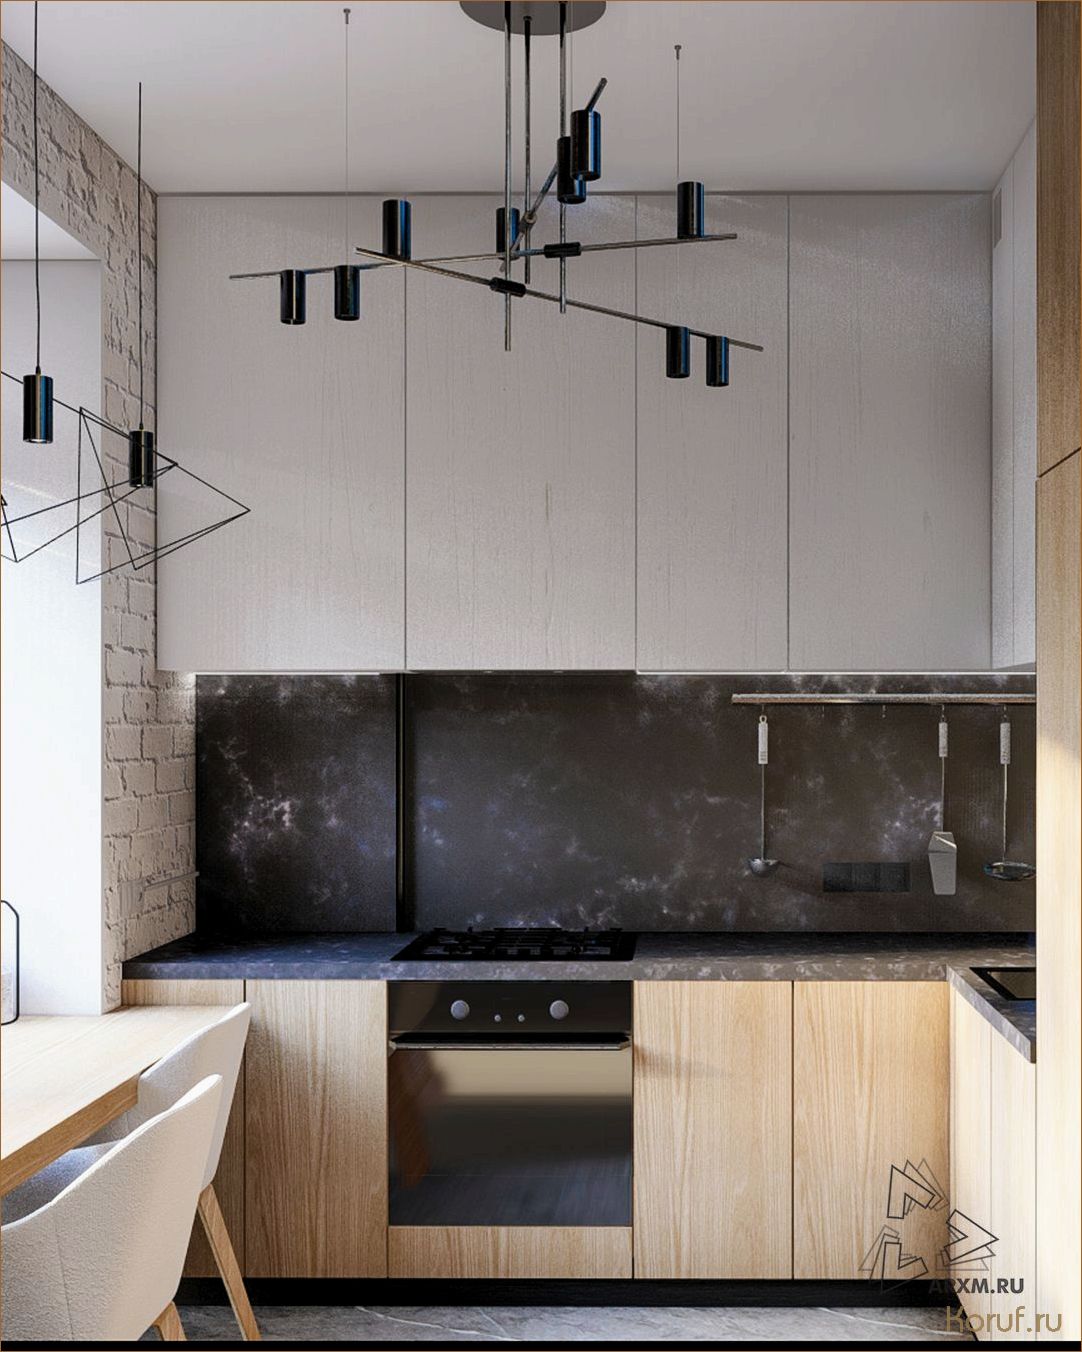 Лофт дизайн в кухне: гармоничное сочетание индустриальности и комфорта